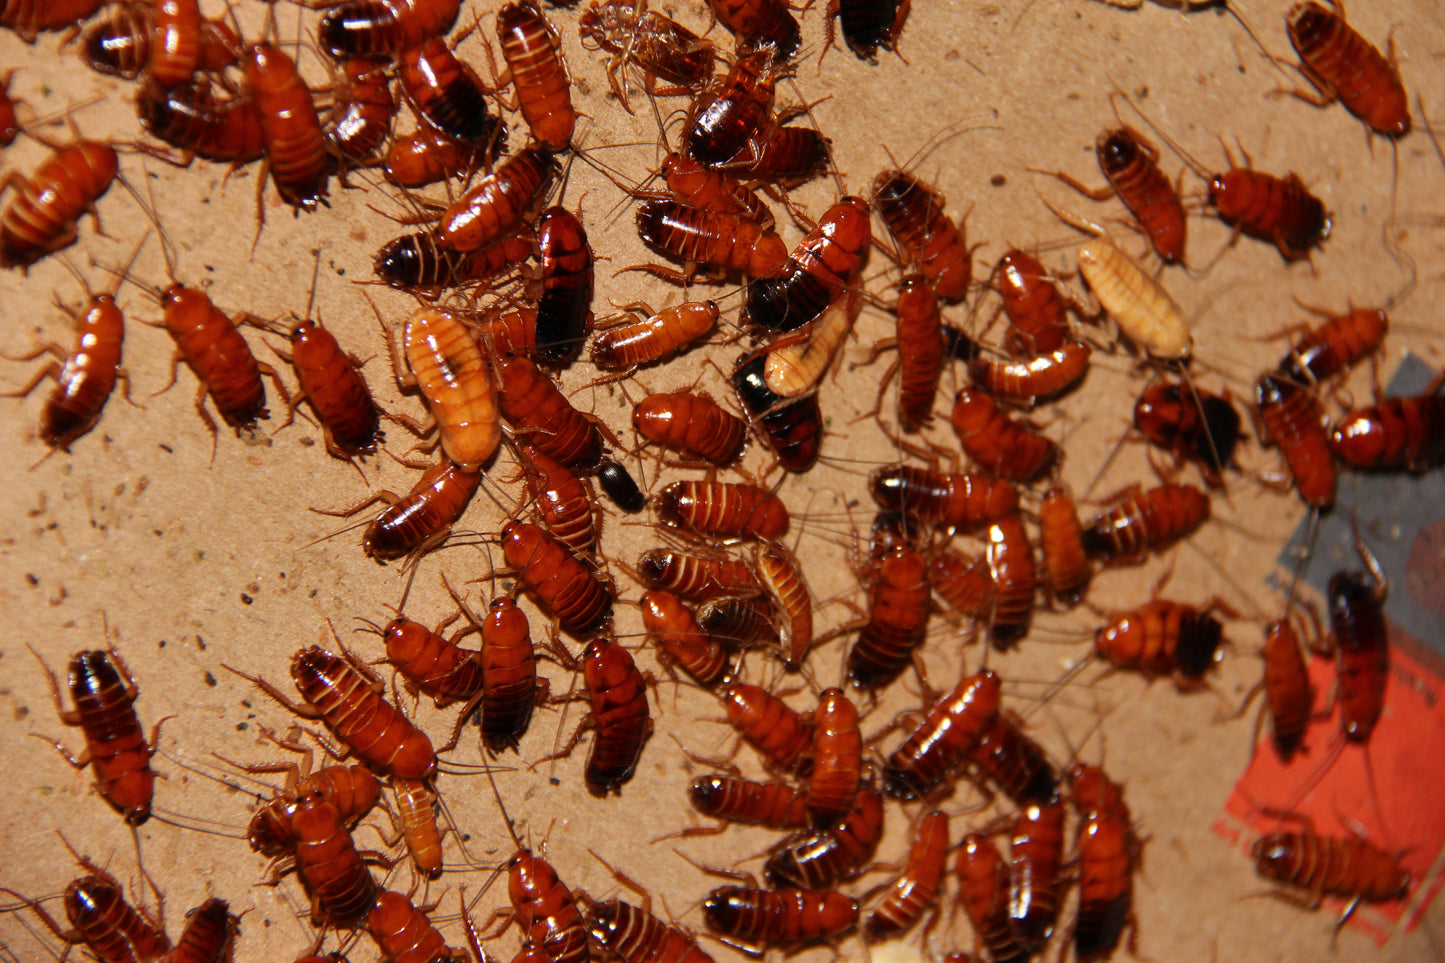 Turkestan Red Runner Roaches (Shelfordella lateralis)